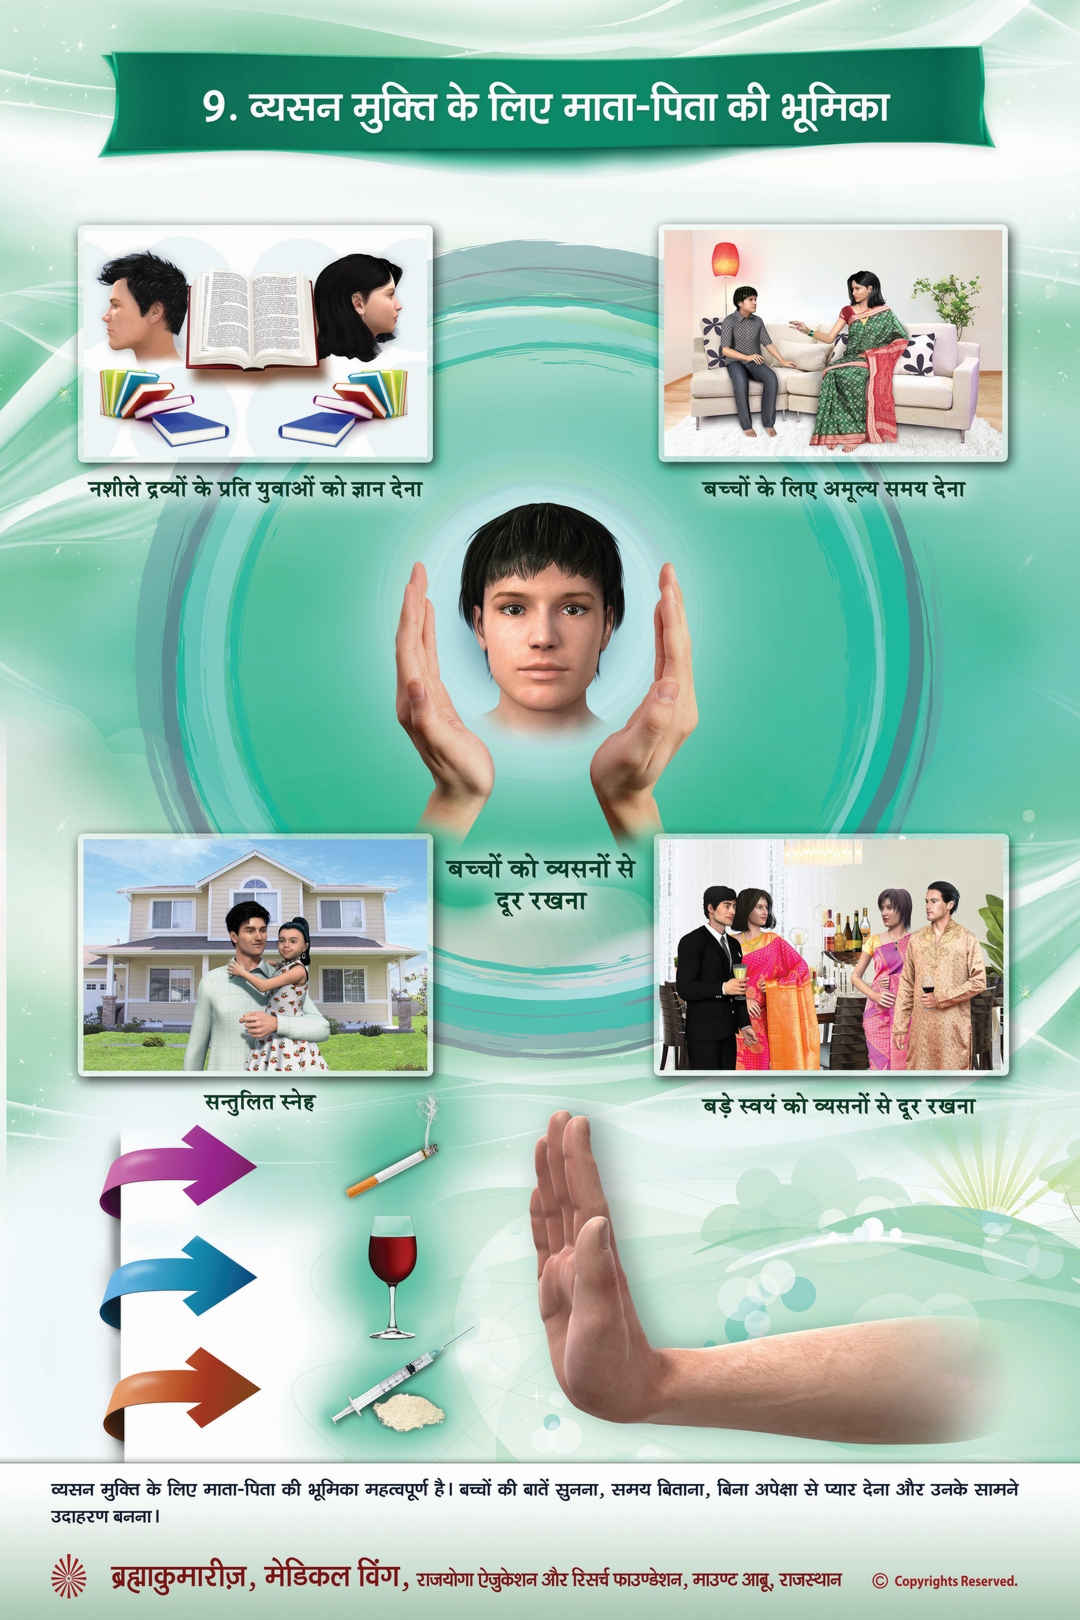 Drug de-addiction - role of parents (hindi)